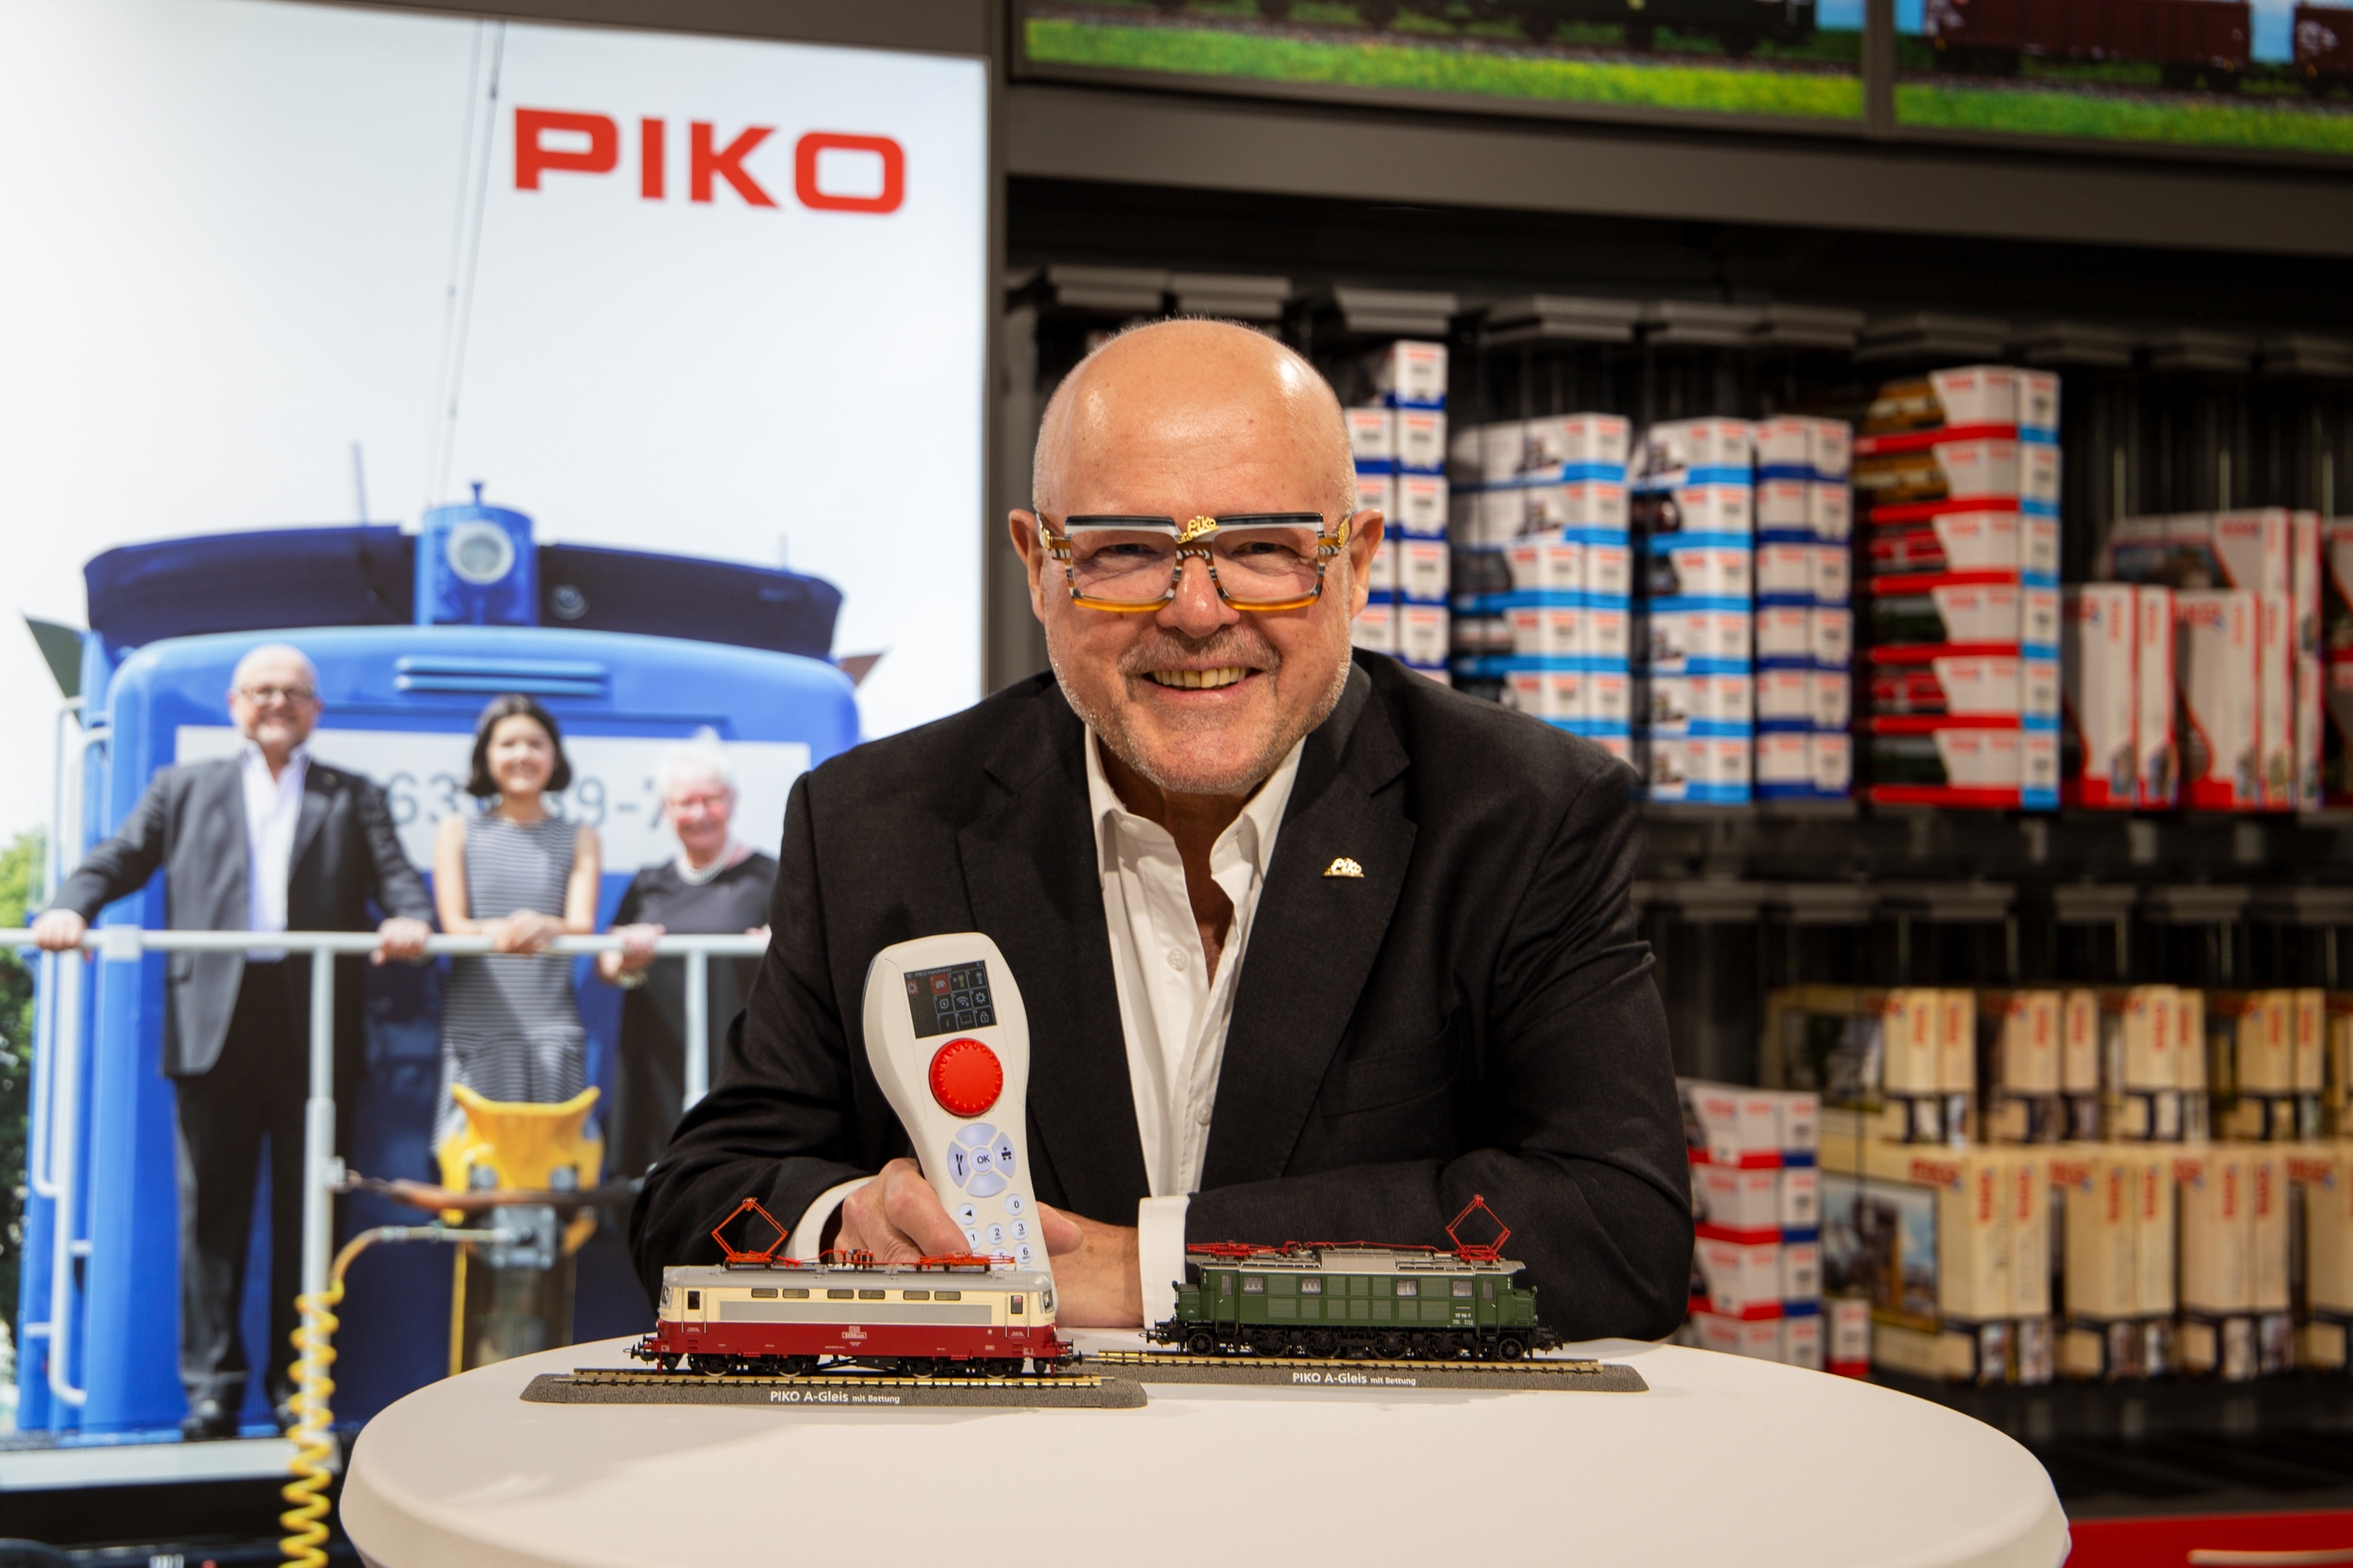 PIKO Inhaber, Herr Dr. René F. Wilfer, präsentiert erste Muster von 2023er H0 Neuheiten sowie die neue Digitalsteuerung PIKO SmartControlWLAN